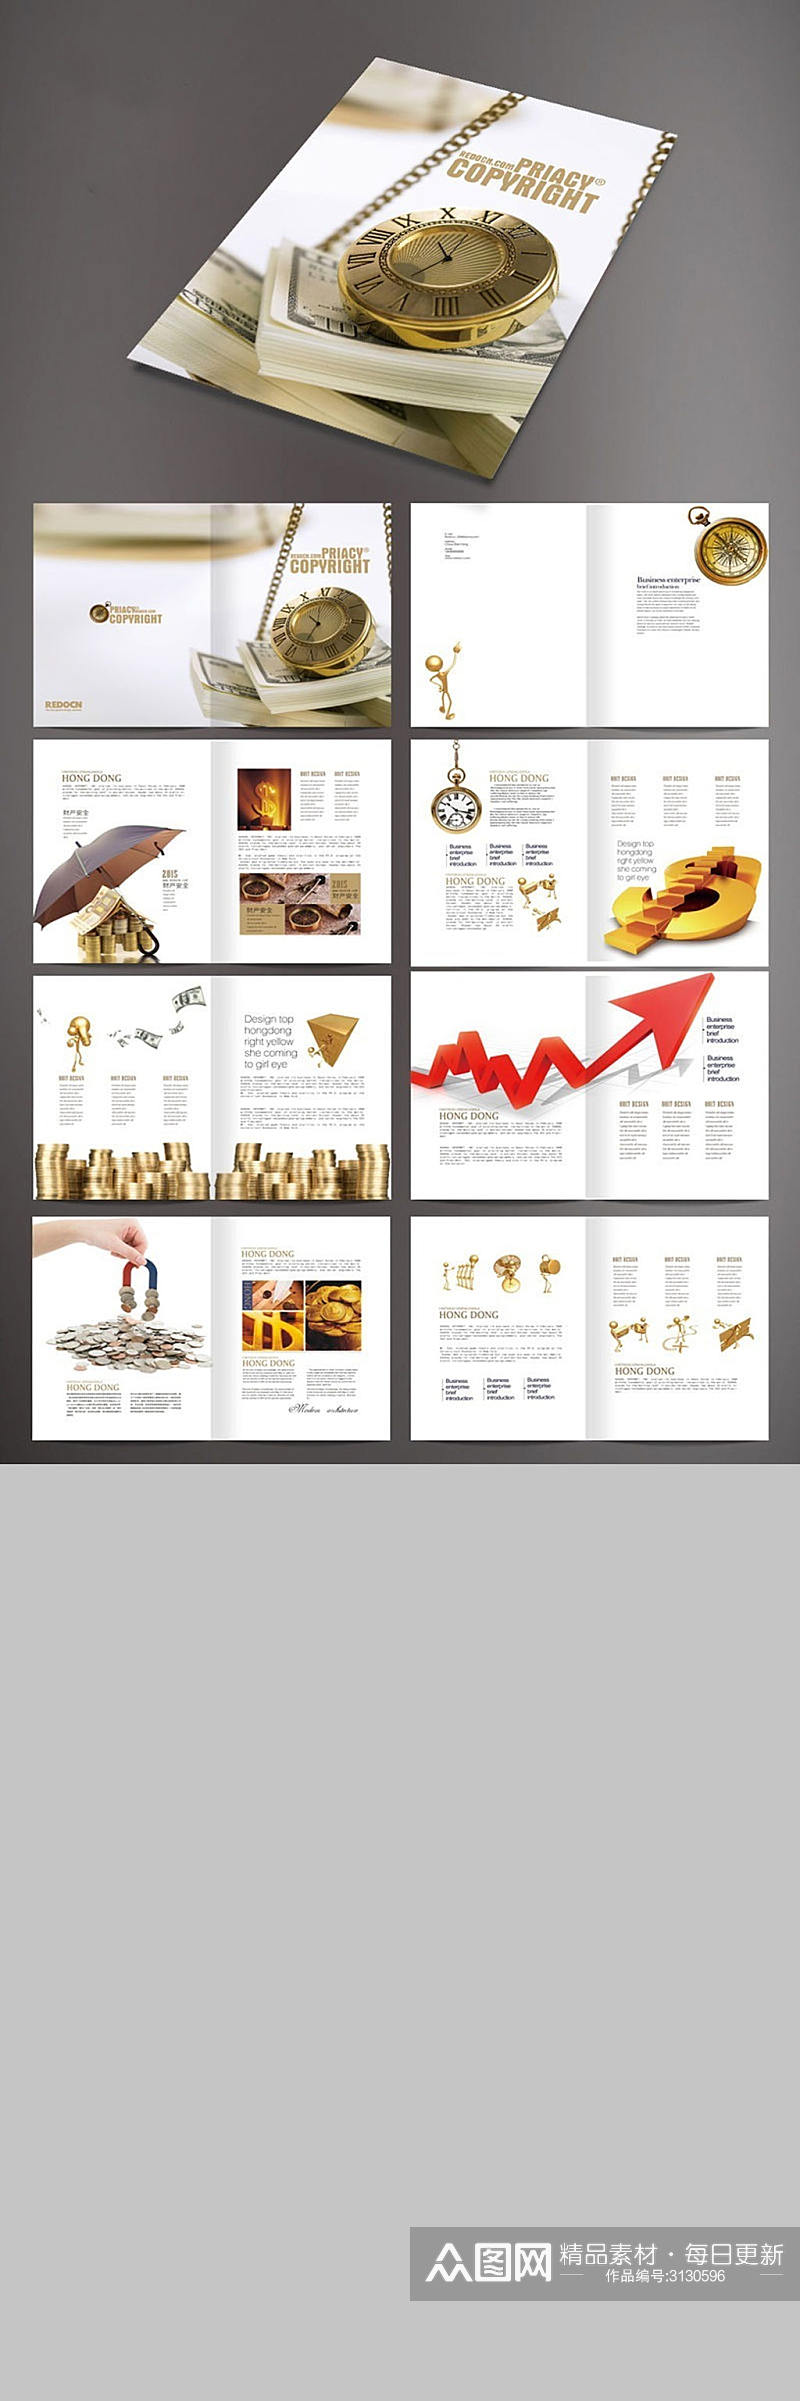 金融公司画册设计素材